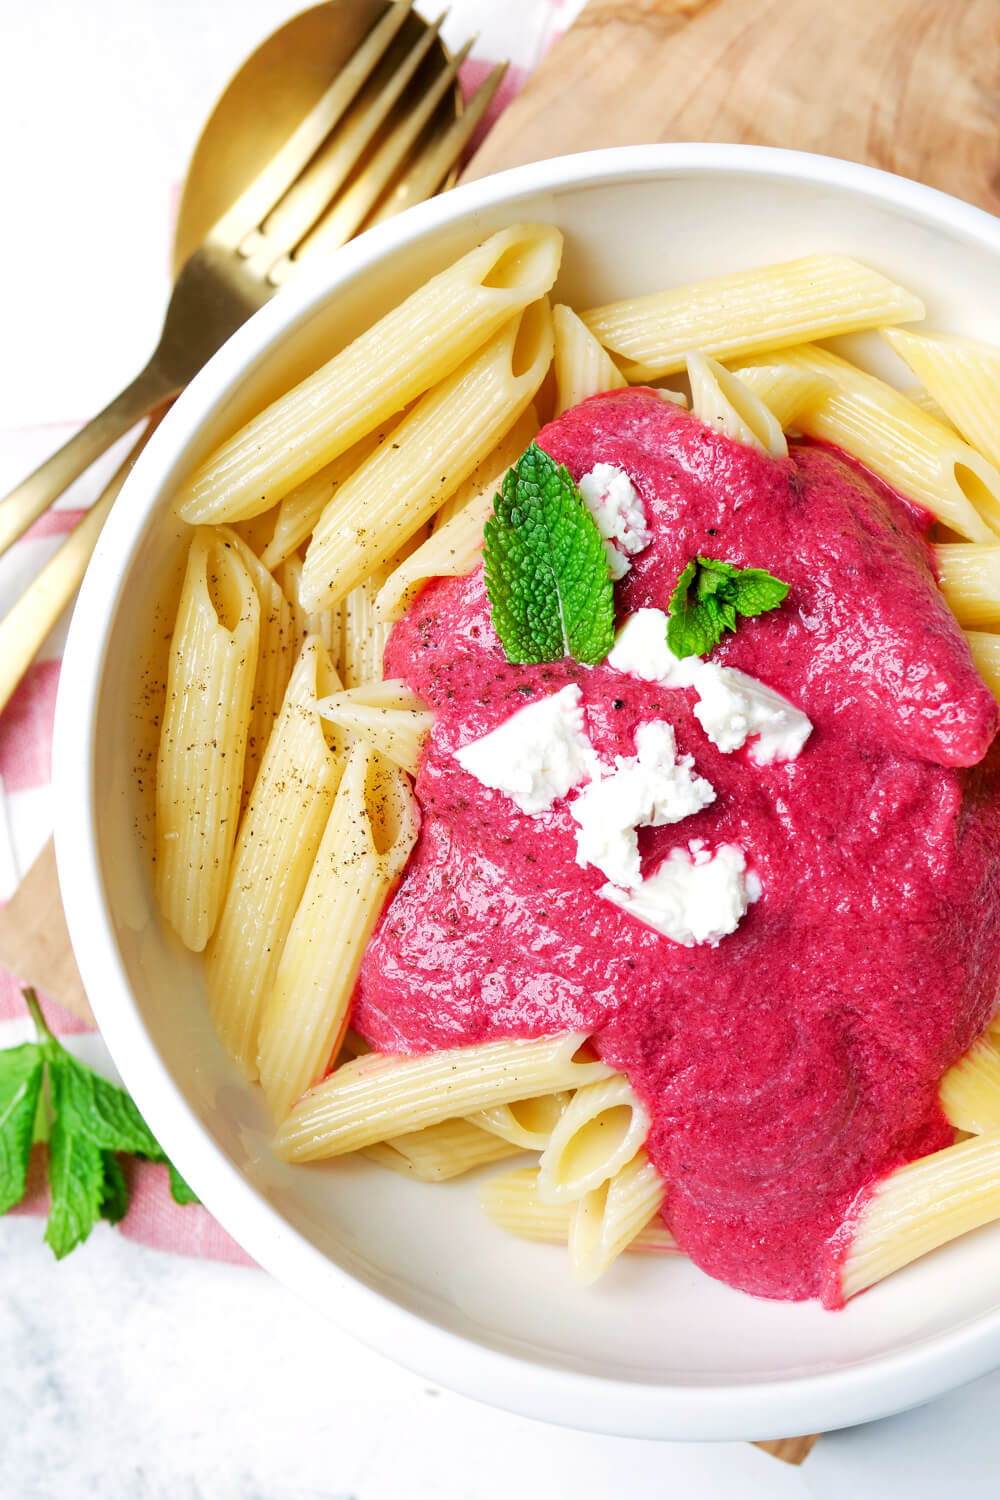 Pink Pasta mit Rote Bete, Feta und Knoblauch